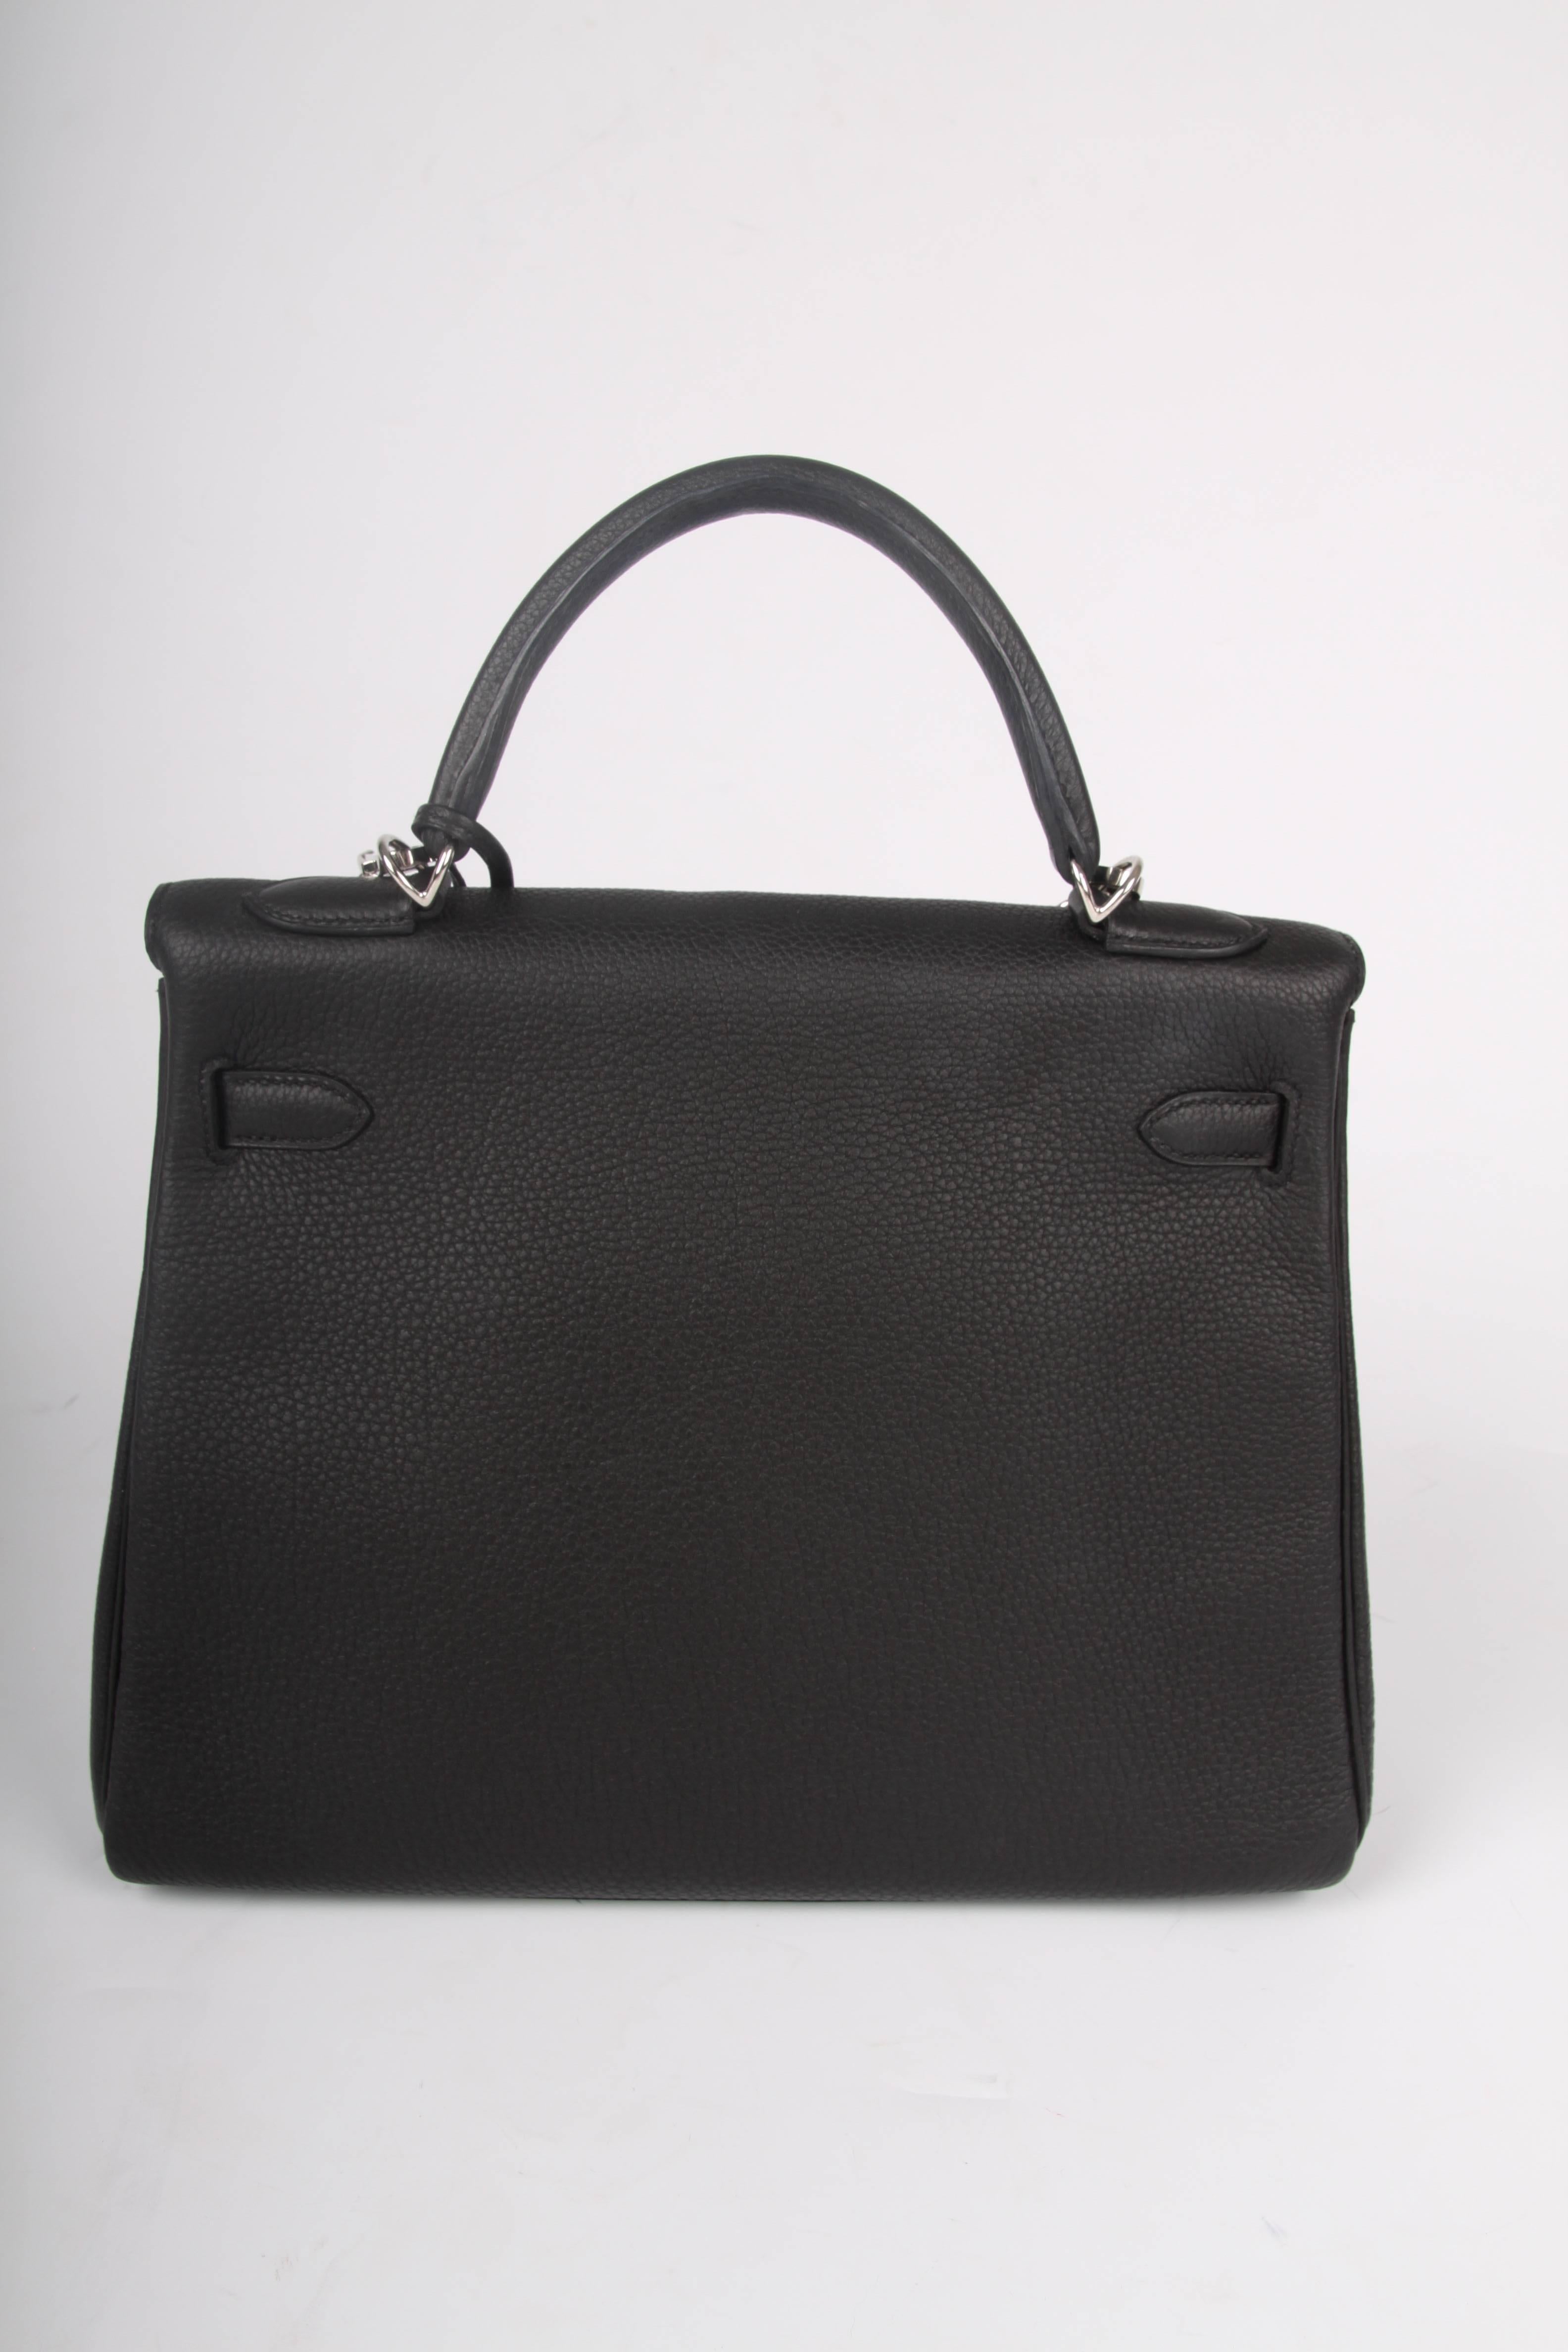 Hermes black Kelly 32 Togo Leather Bag, 2017 1